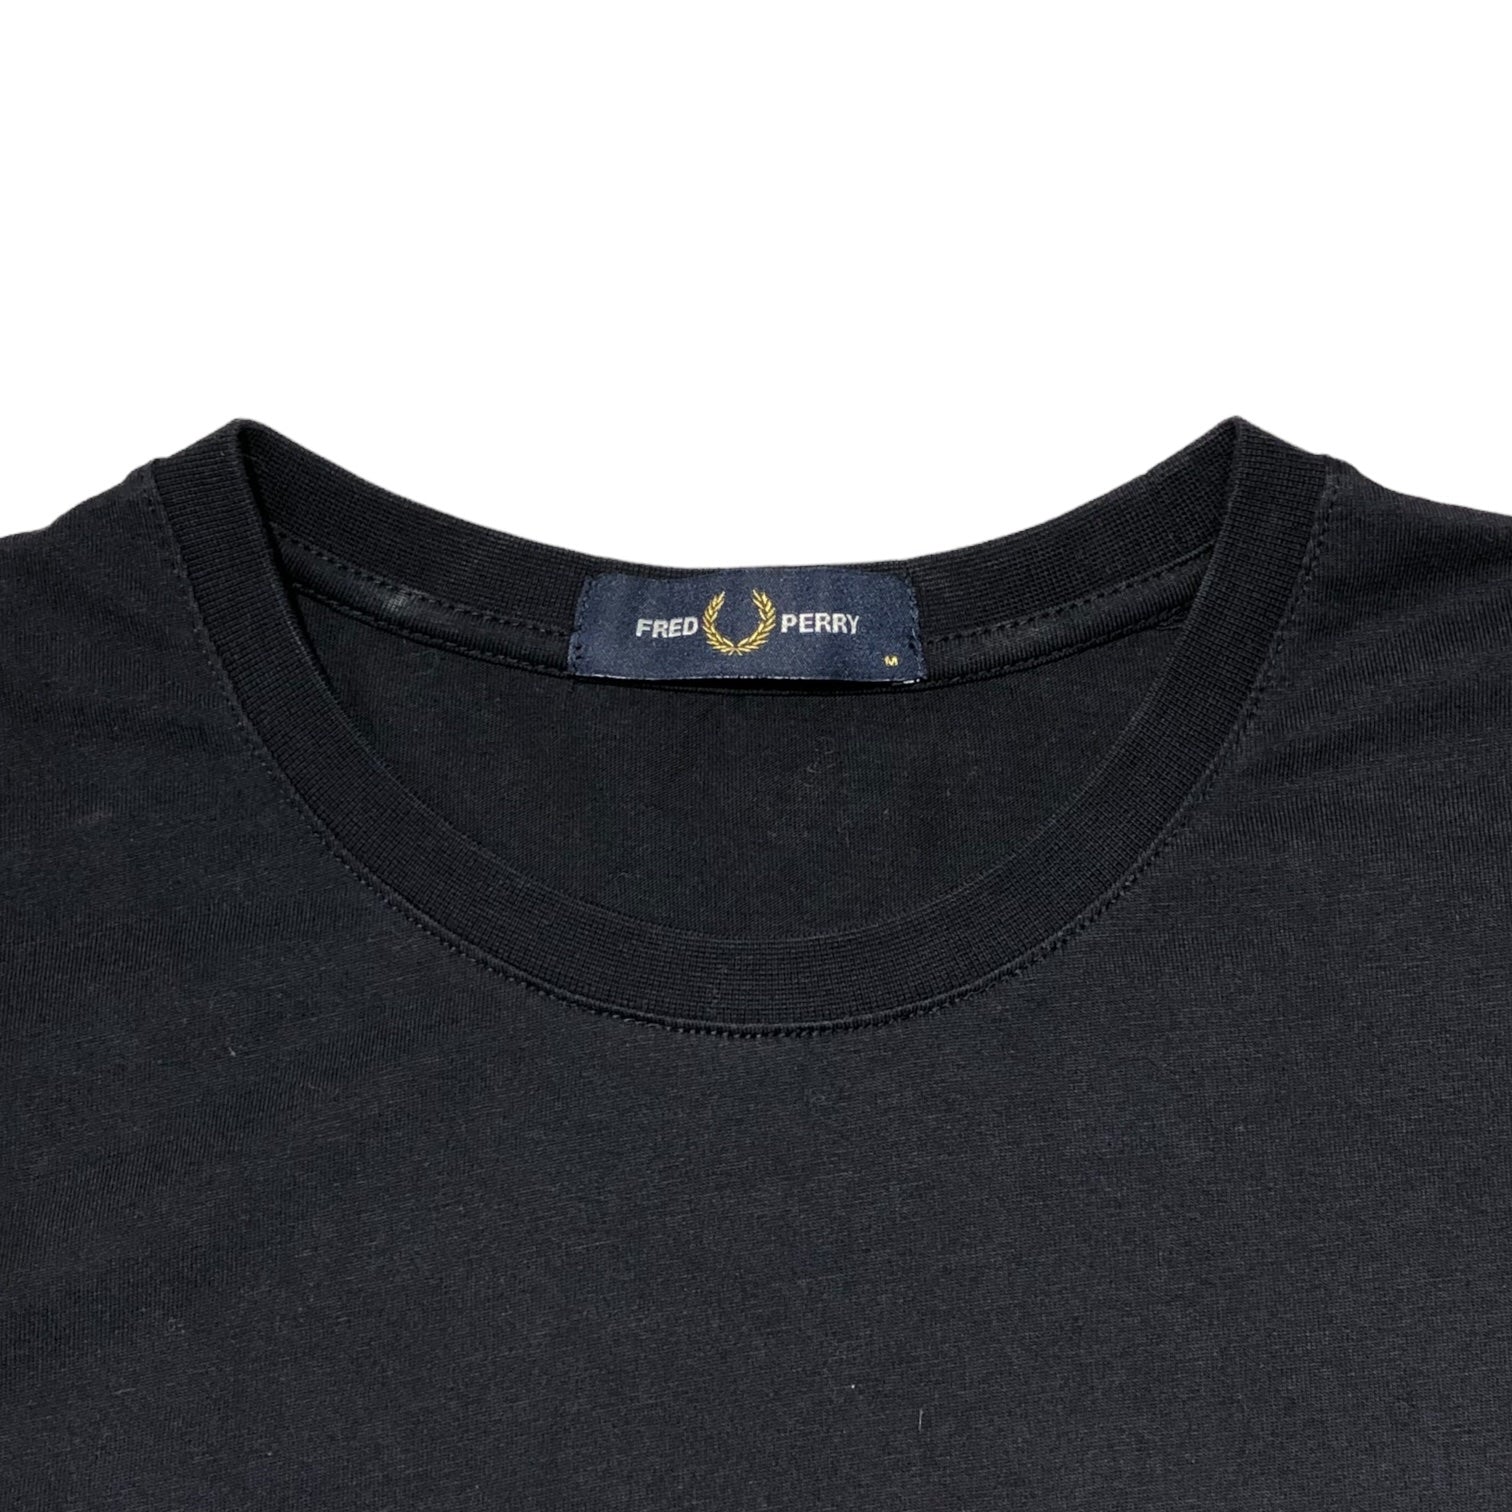 FRED PERRY(フレッドペリー) LAUREL WREATH T-SHIRT ロゴ Tシャツ 半袖 M2665 M ネイビー